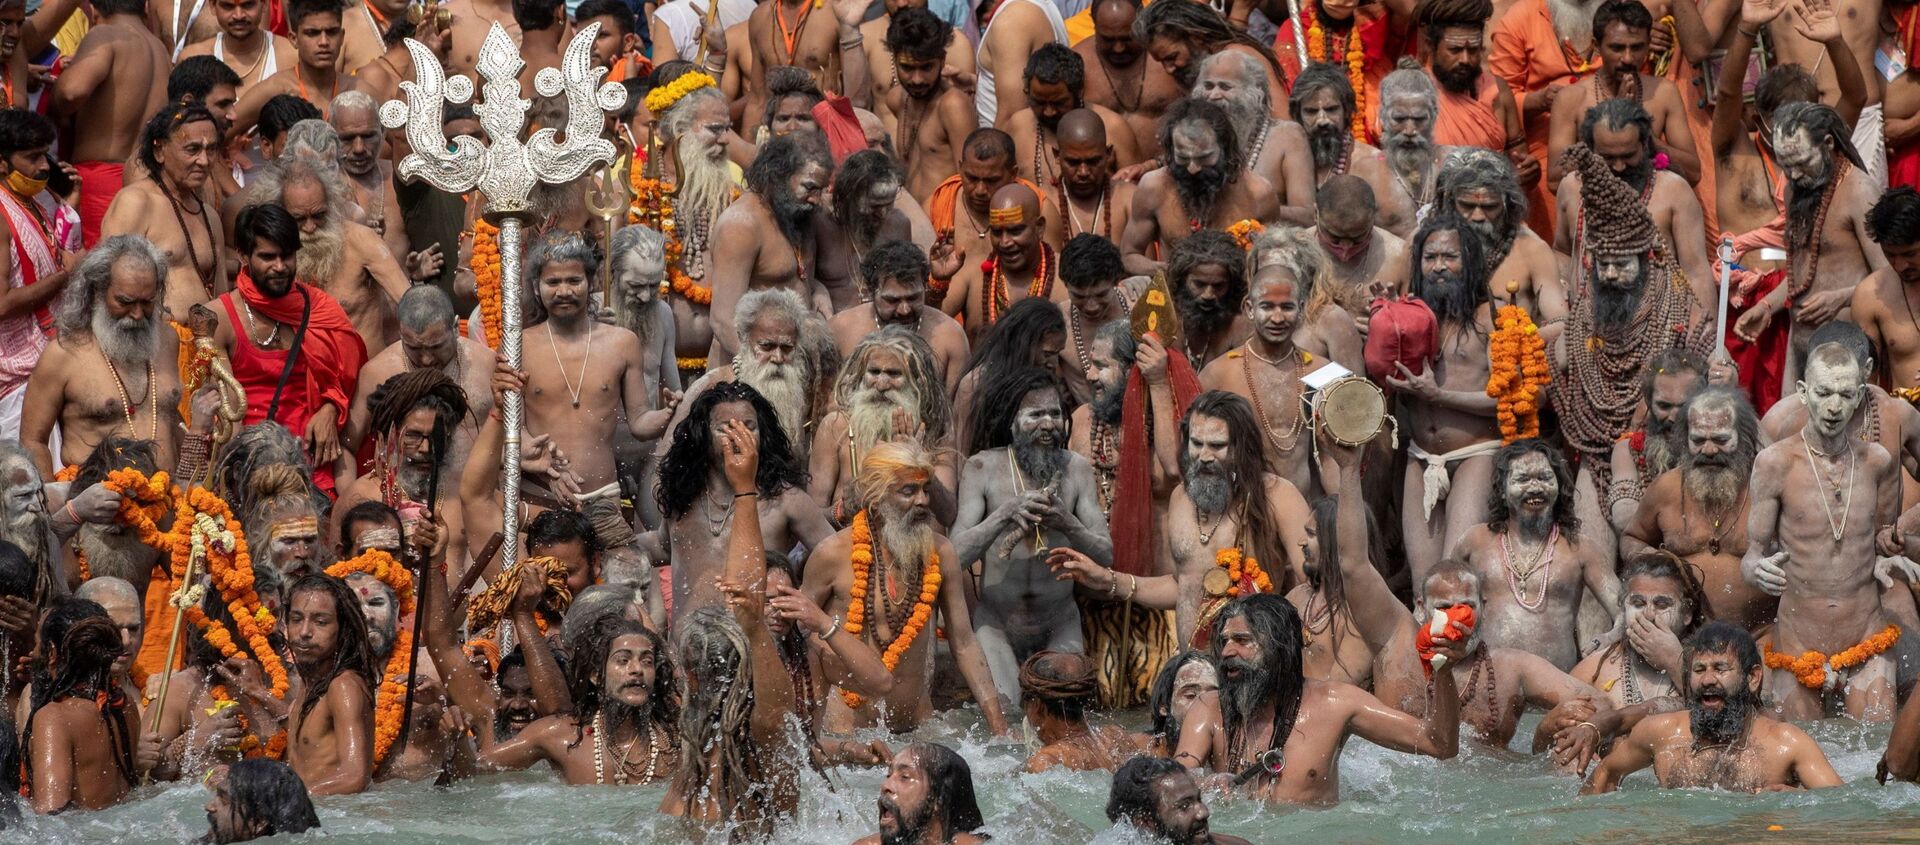 ناغا سادهوس، أو رجال دين هندوس يغطسون في نهر الغانج خلال شاهي سنان في كومبه ميلا، أو مهرجان بيتشر، وسط انتشار مرض فيروس كورونا (كوفيد-19) في هاريدوار، الهند 12 أبريل 2021 - سبوتنيك عربي, 1920, 16.08.2021